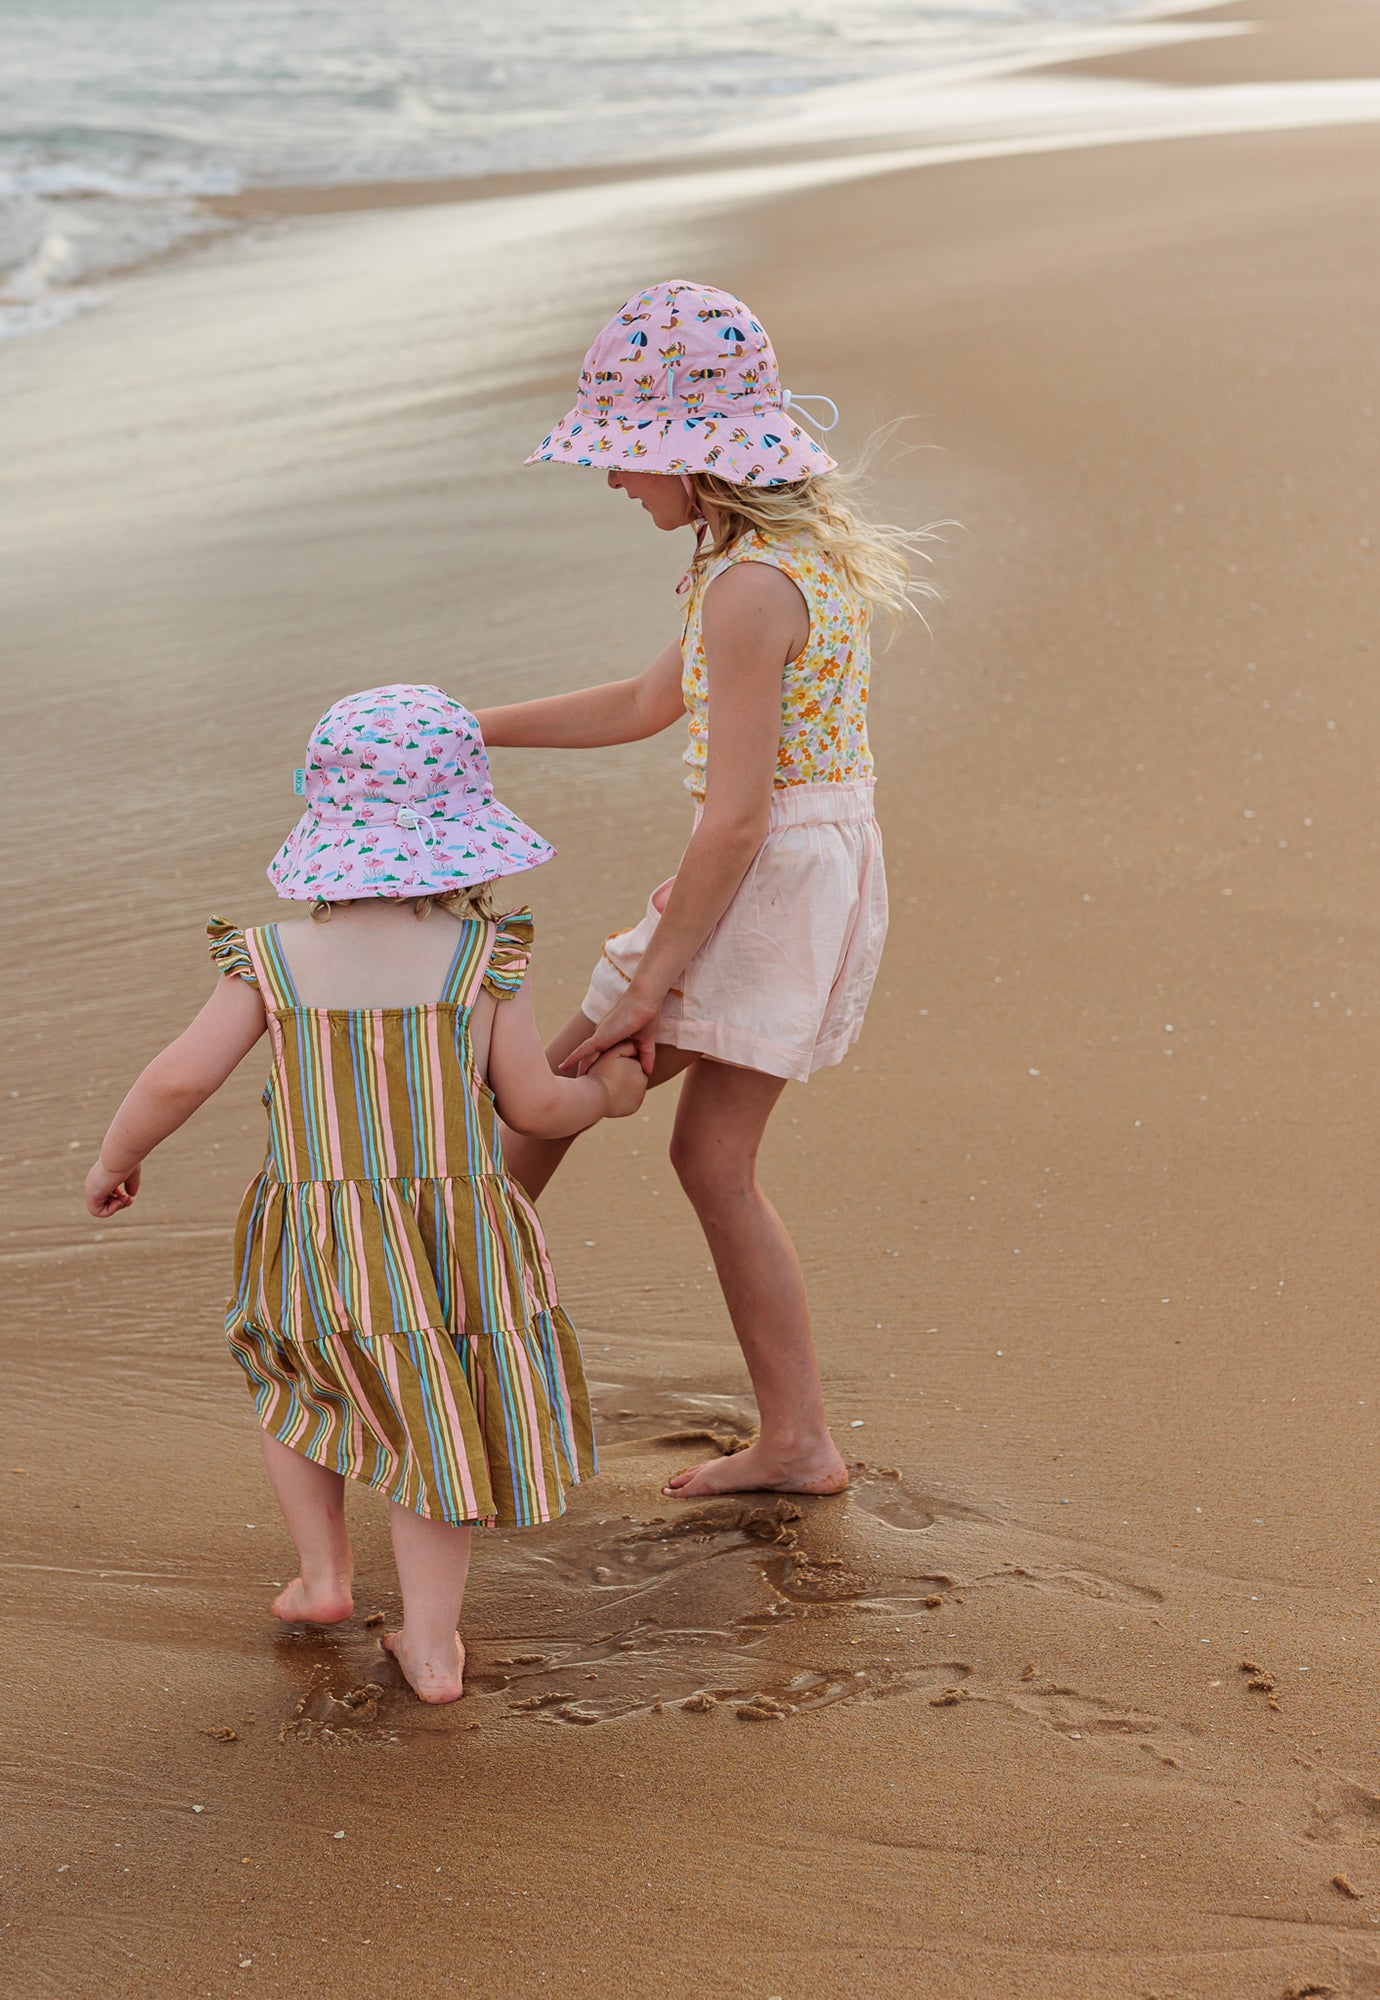 acorn kids - dancing flamingo bucket hat